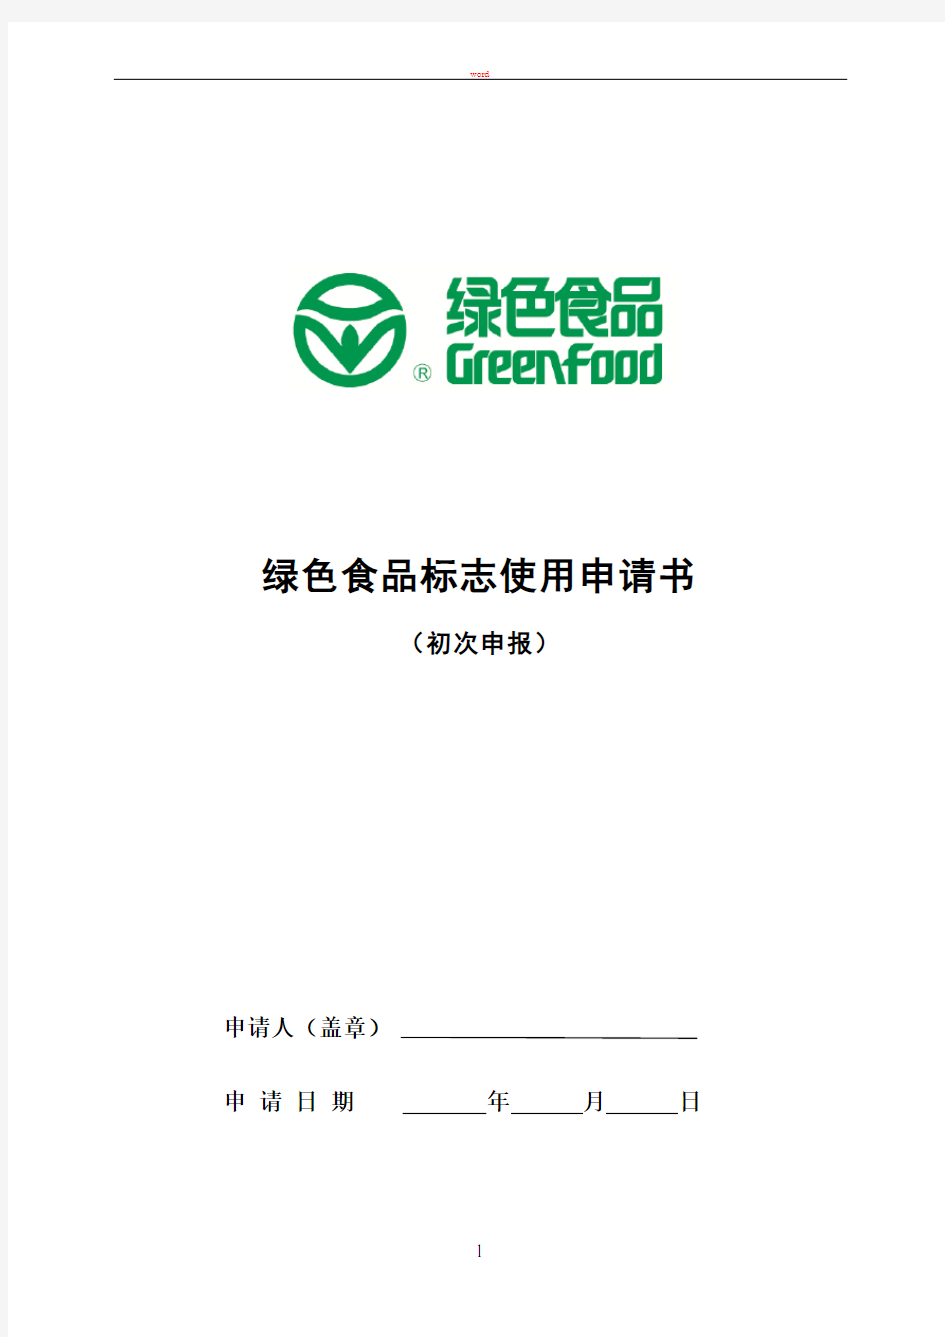 绿色食品标志申请书(初次申报).-.201382112333